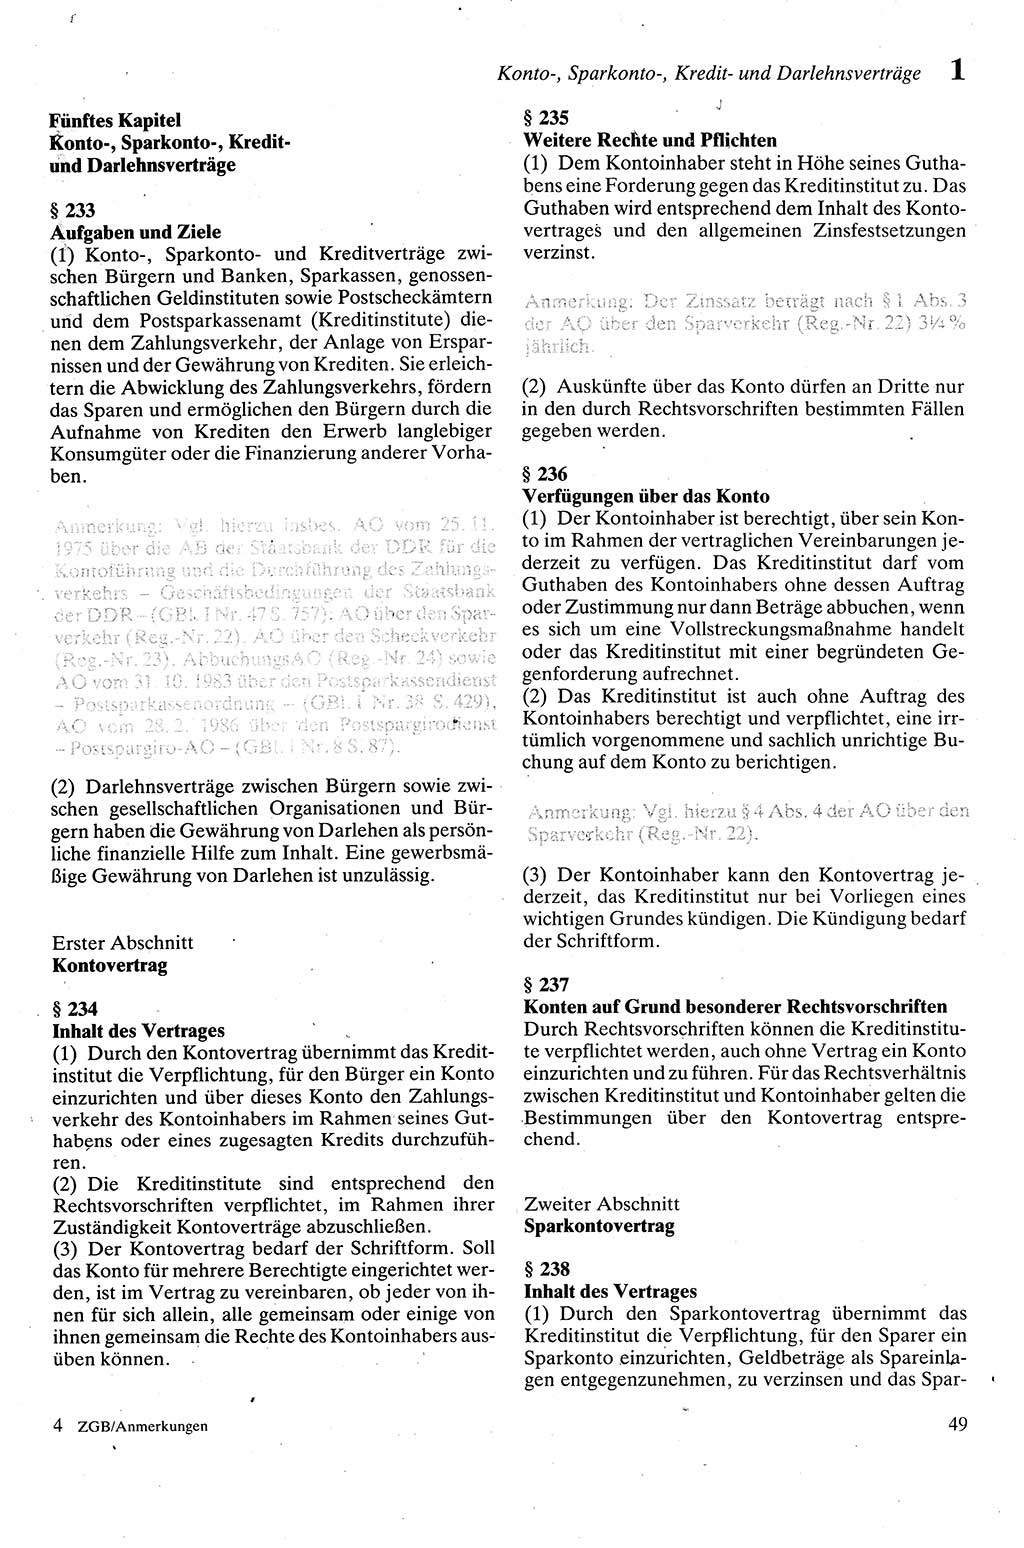 Zivilgesetzbuch (ZVG) sowie angrenzende Gesetze und Bestimmungen [Deutsche Demokratische Republik (DDR)] 1975, Seite 49 (ZGB Ges. Best. DDR 1975, S. 49)